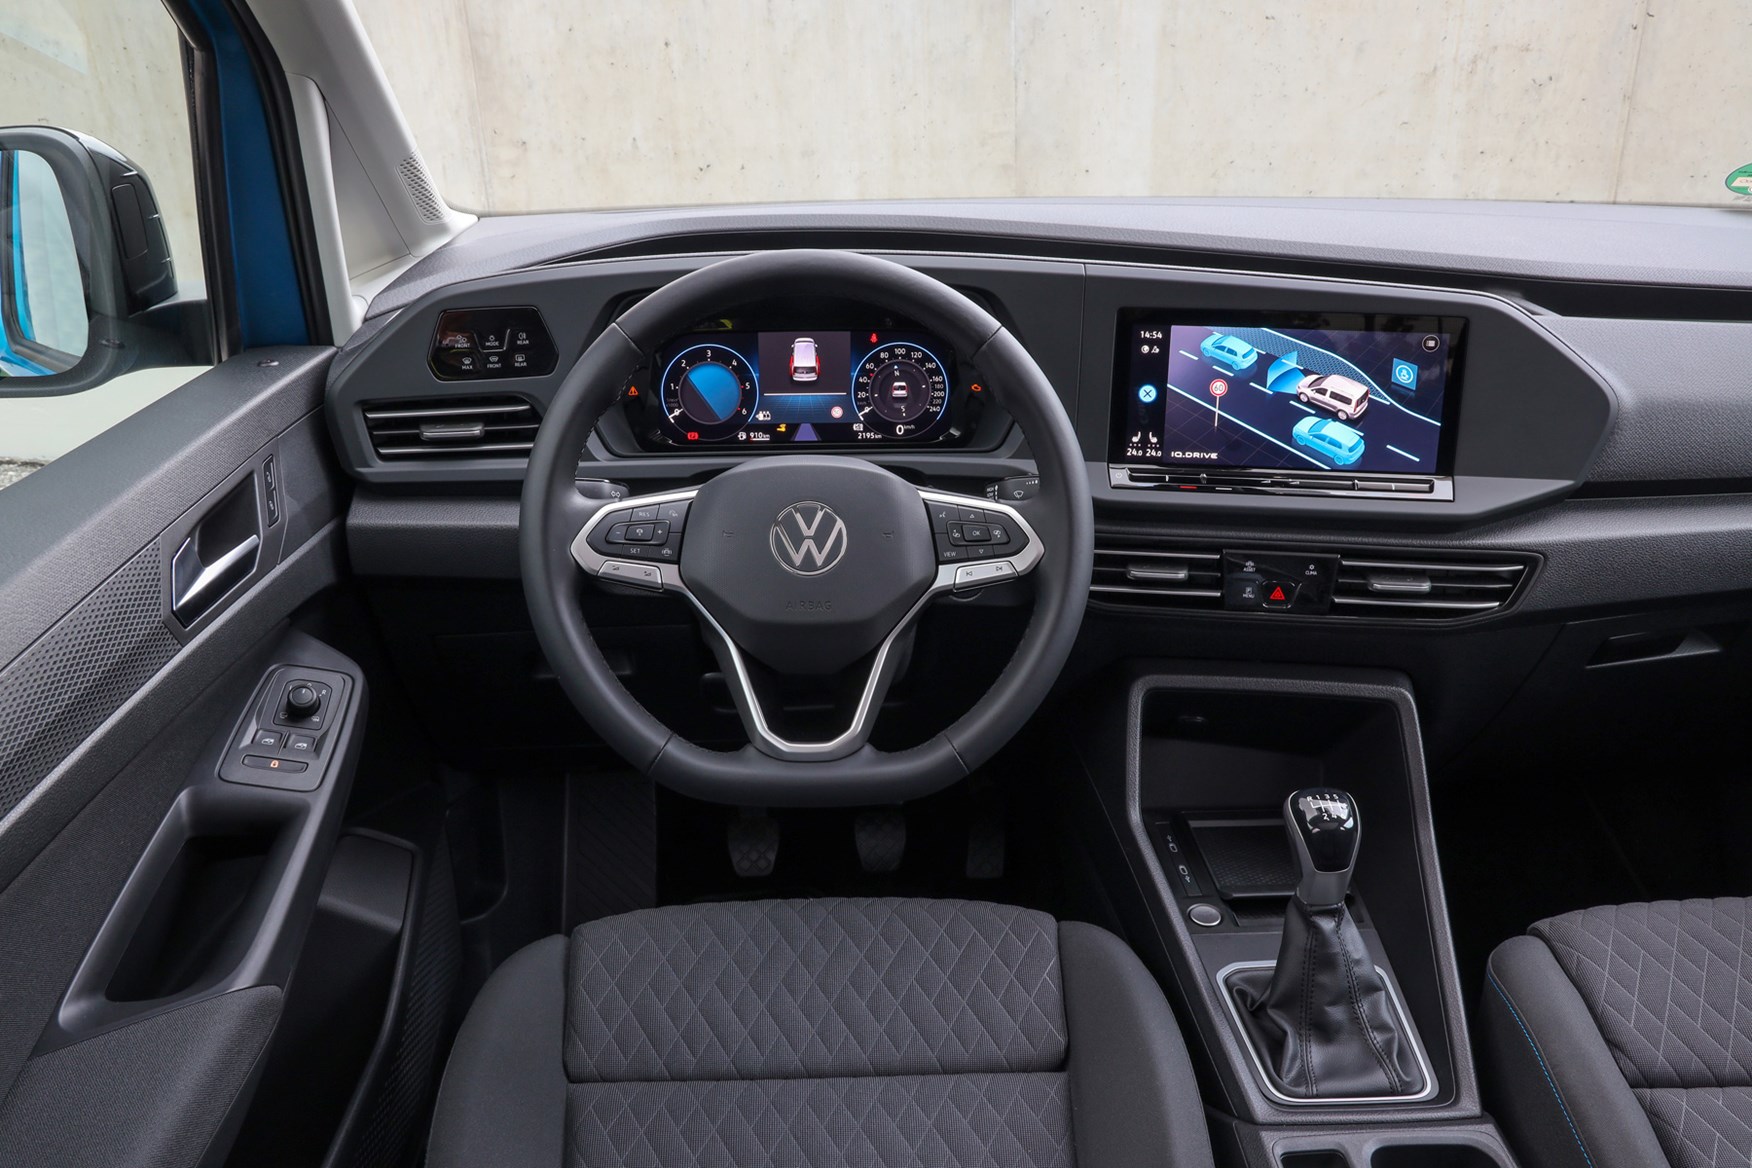 Volkswagen Caddy Cargo van review 2024